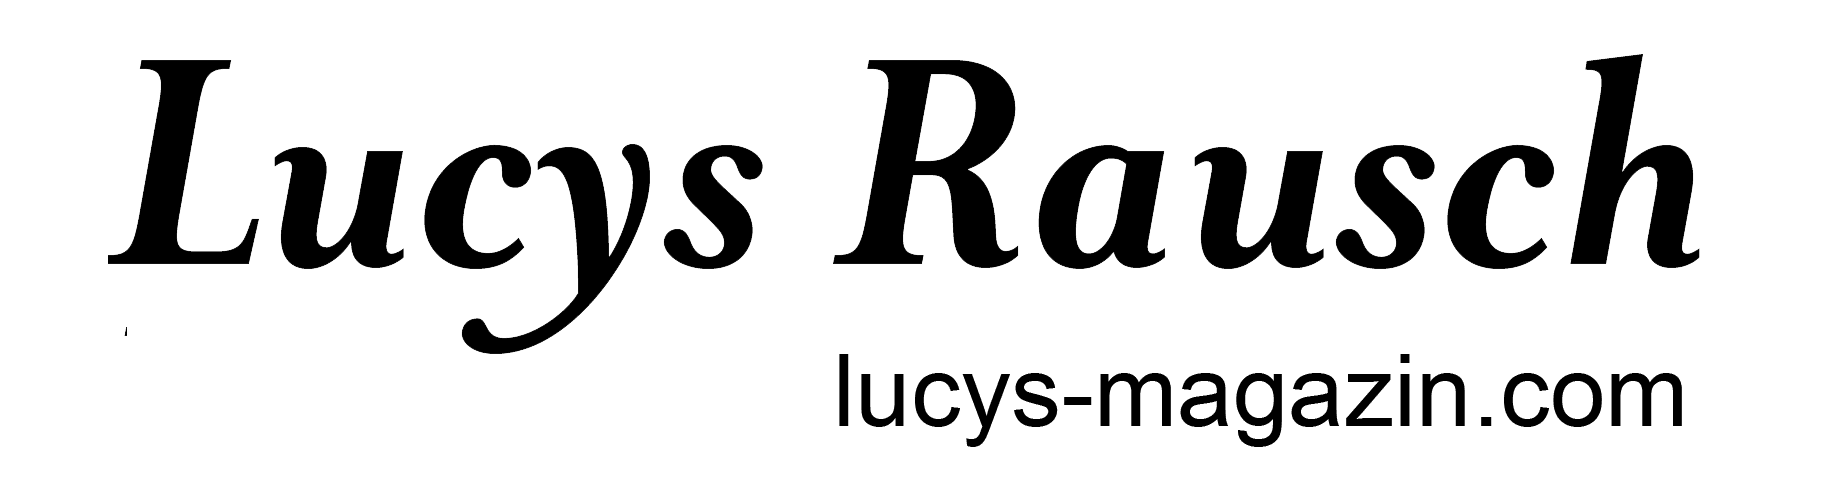 Lucys Rausch - Das Rausch-Magazin